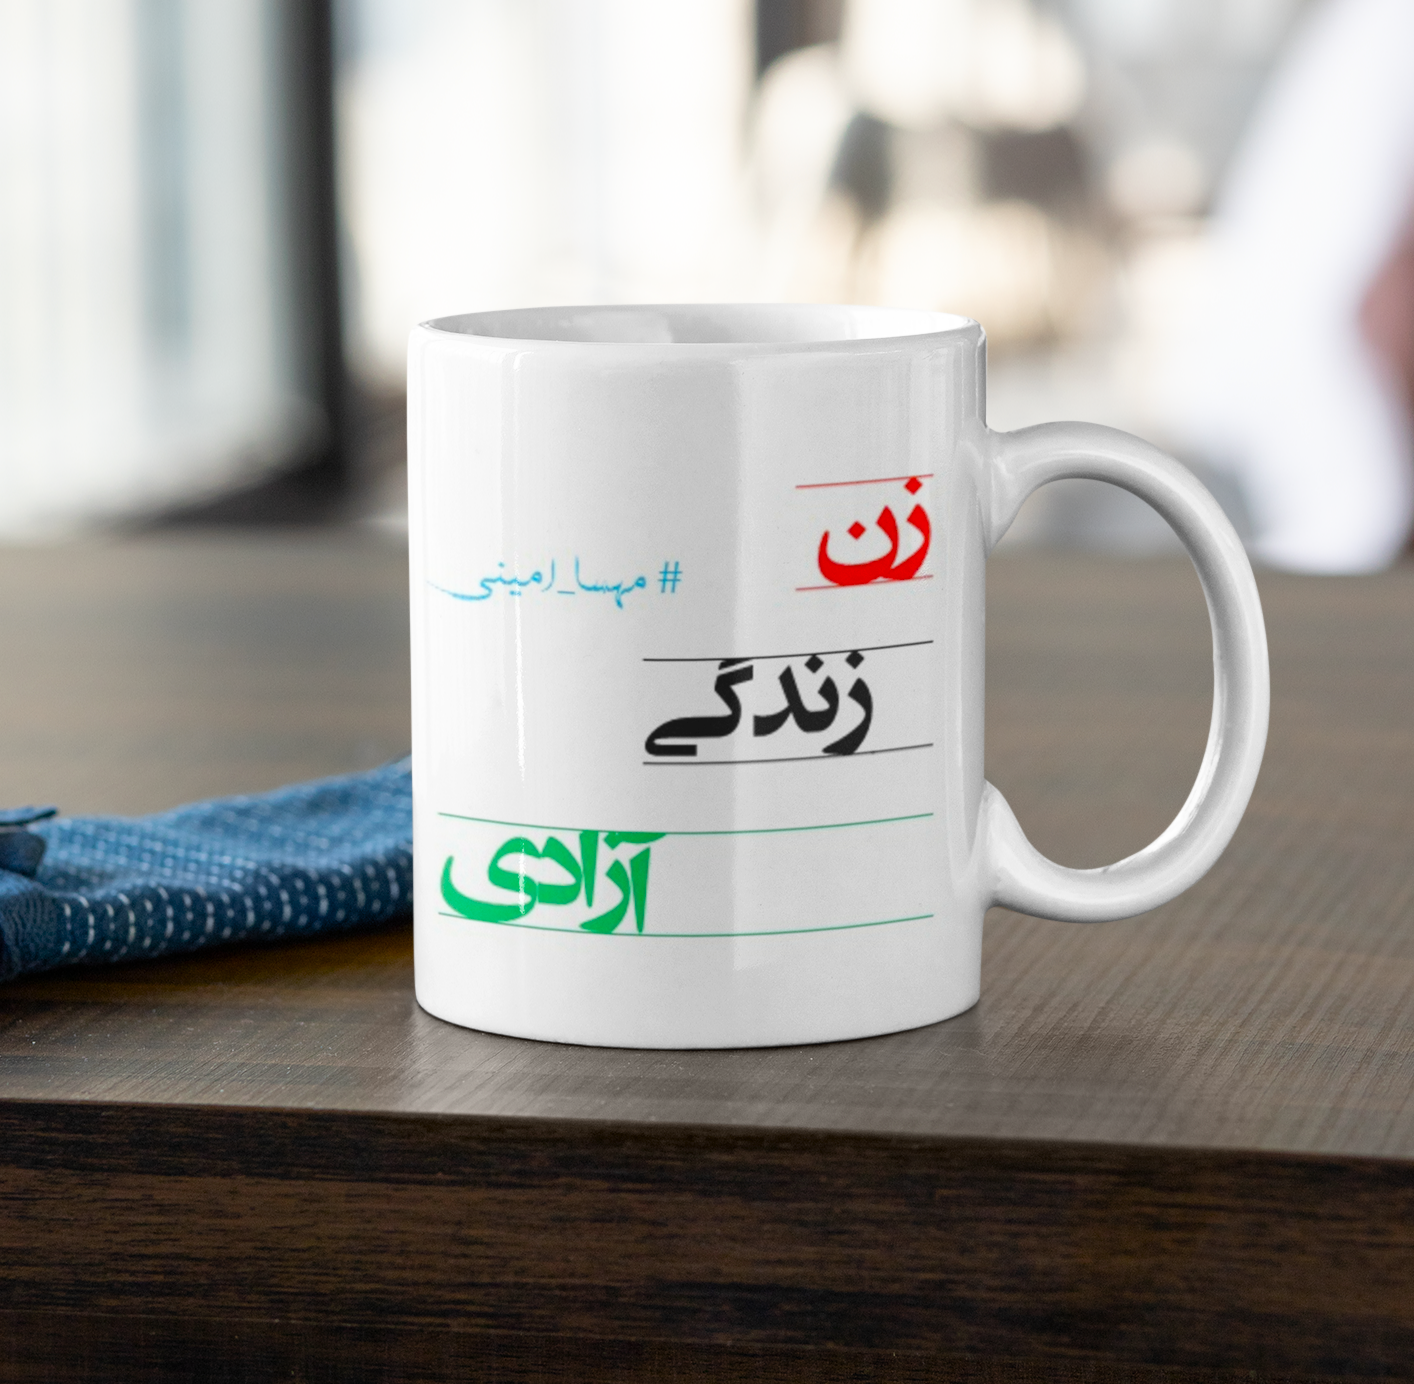 ماگ زن، زندگی، آزادی – شماره  چهار– Women, Life, Freedom Coffee Mug- #Mahsa_Amini - 33904